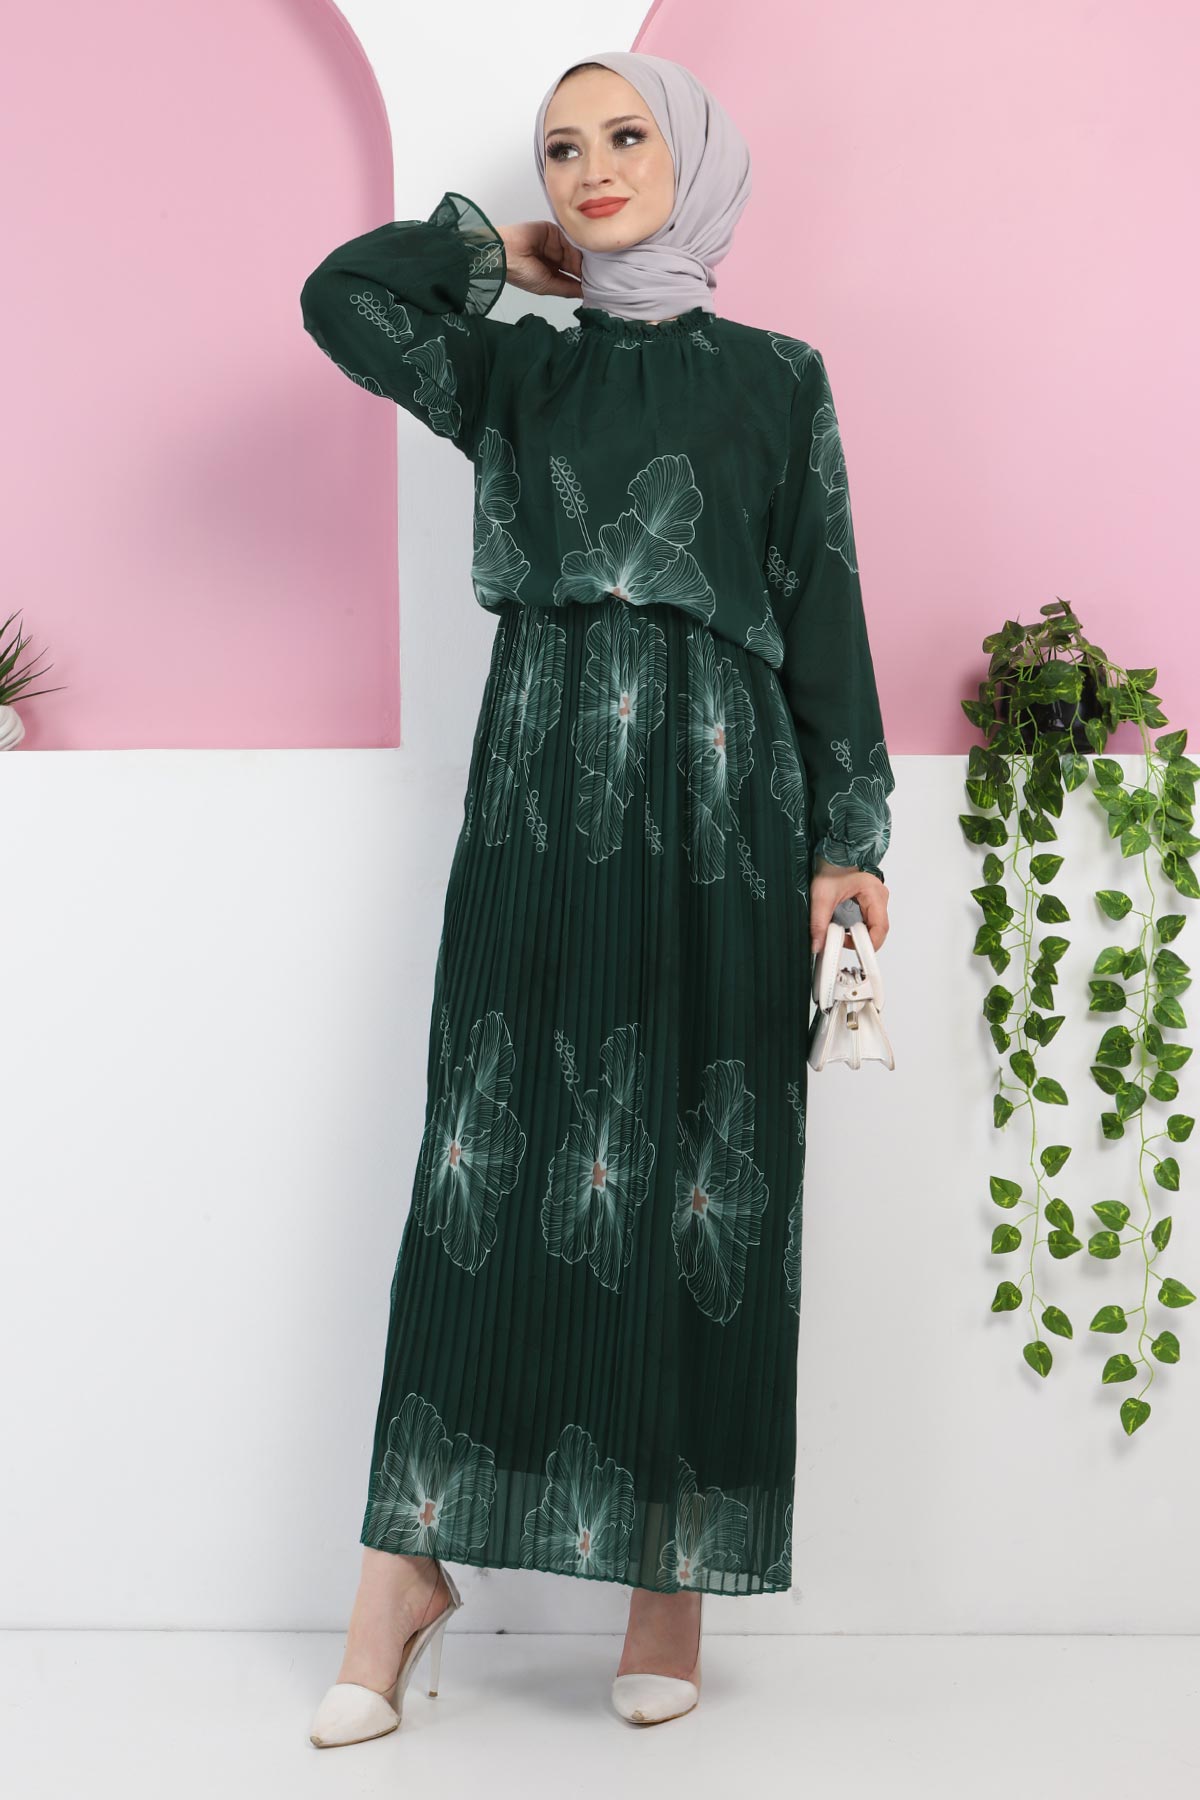 Tesettür Dünyası - Çiçek Desenli Şifon Elbise TSD220501 Zümrüt Yeşili